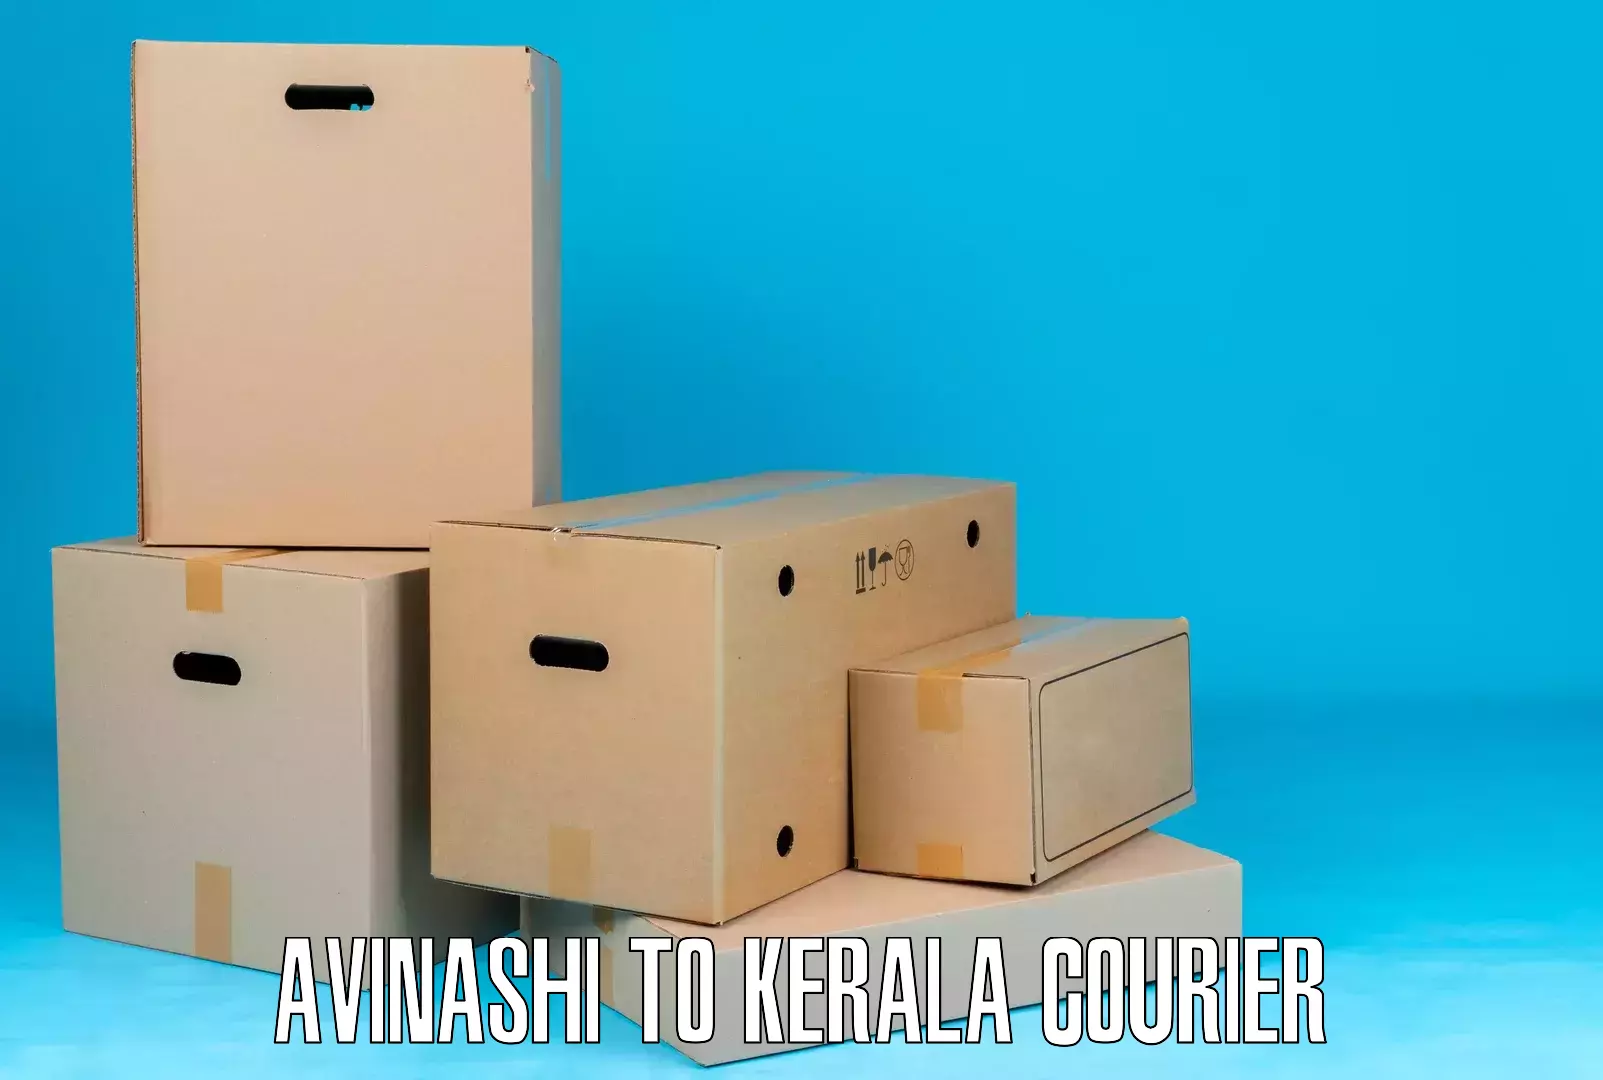 Customized delivery options in Avinashi to Manjeshwar